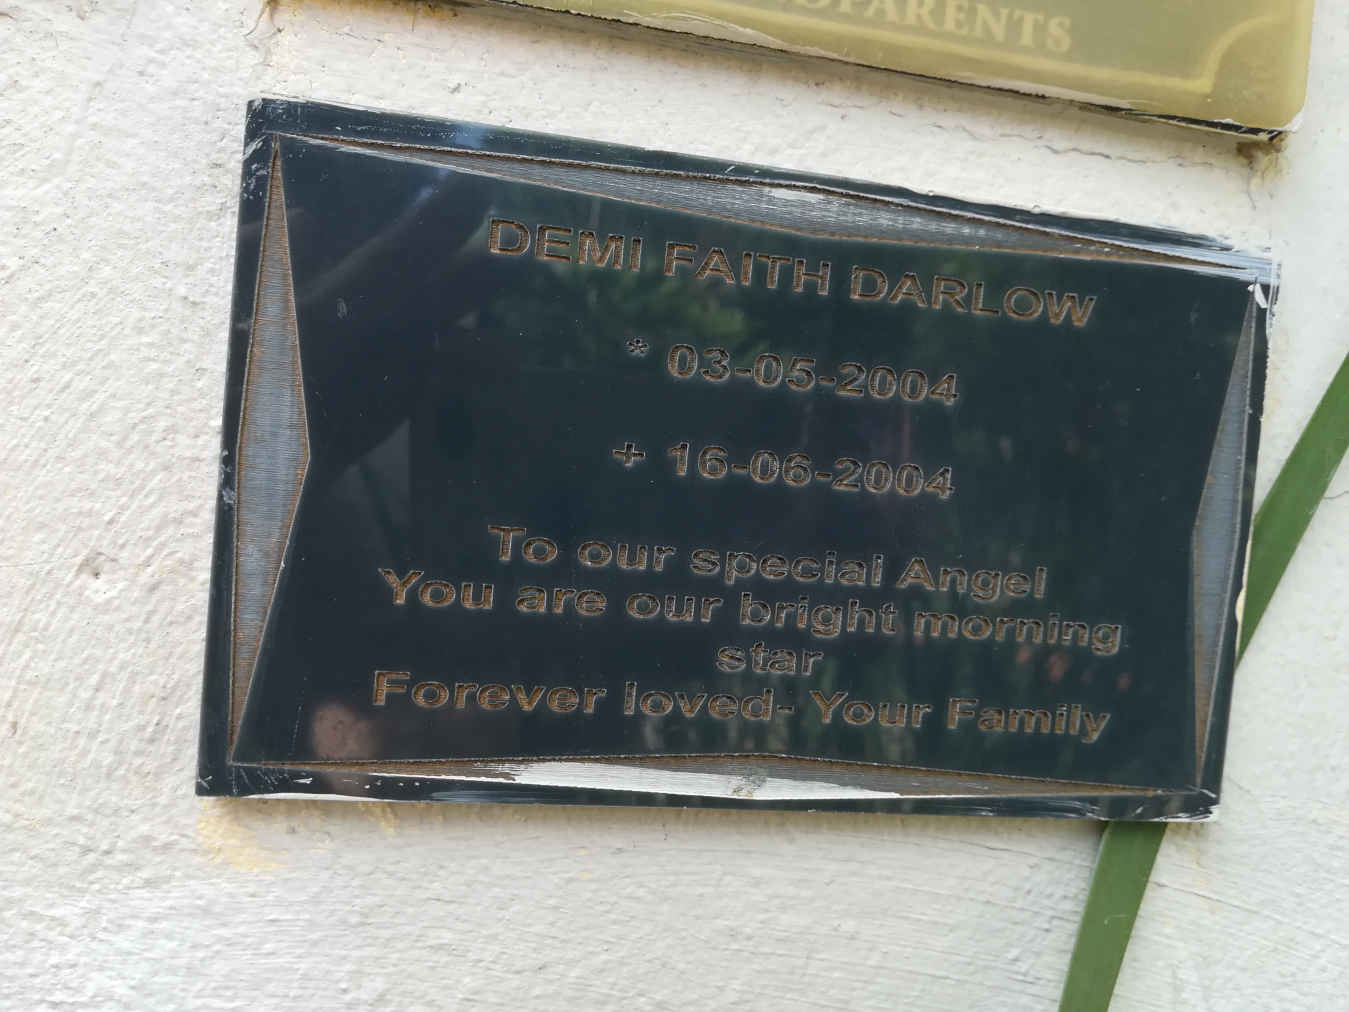 DARLOW Demi Faith 2004-2004